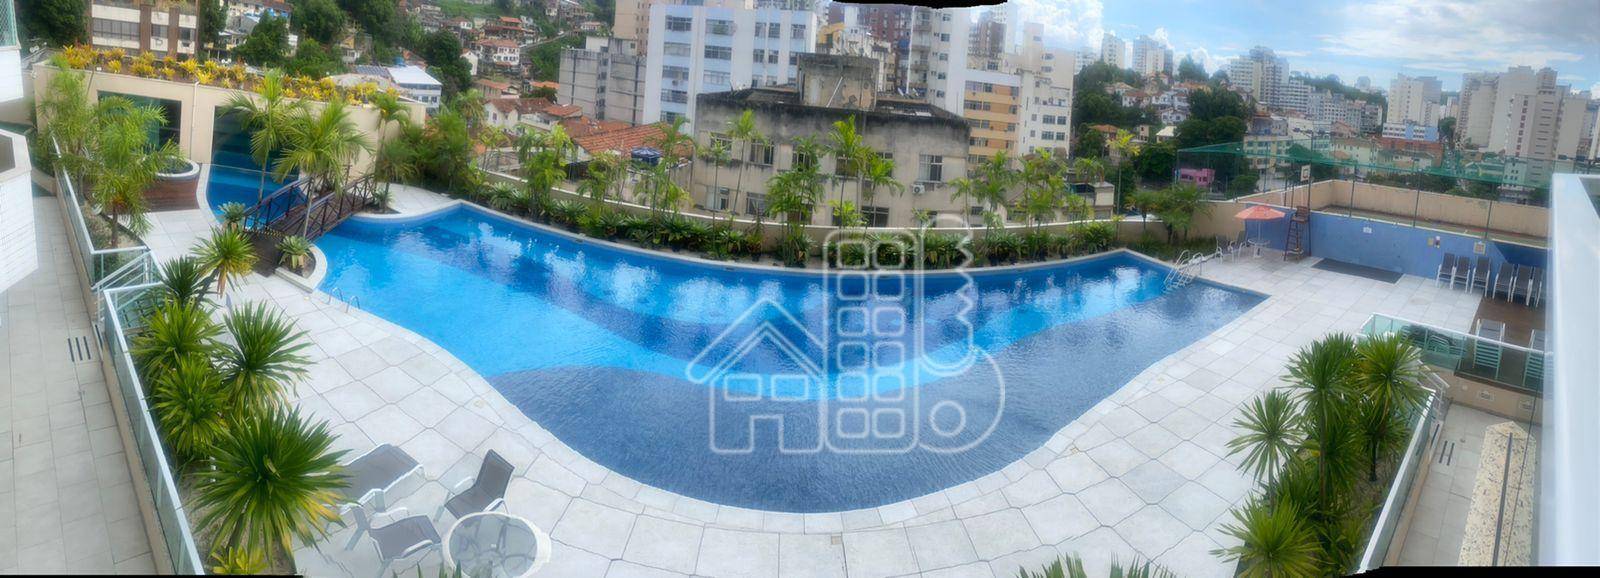 Apartamento com 3 dormitórios à venda, 107 m² por R$ 630.000,00 - Icaraí - Niterói/RJ